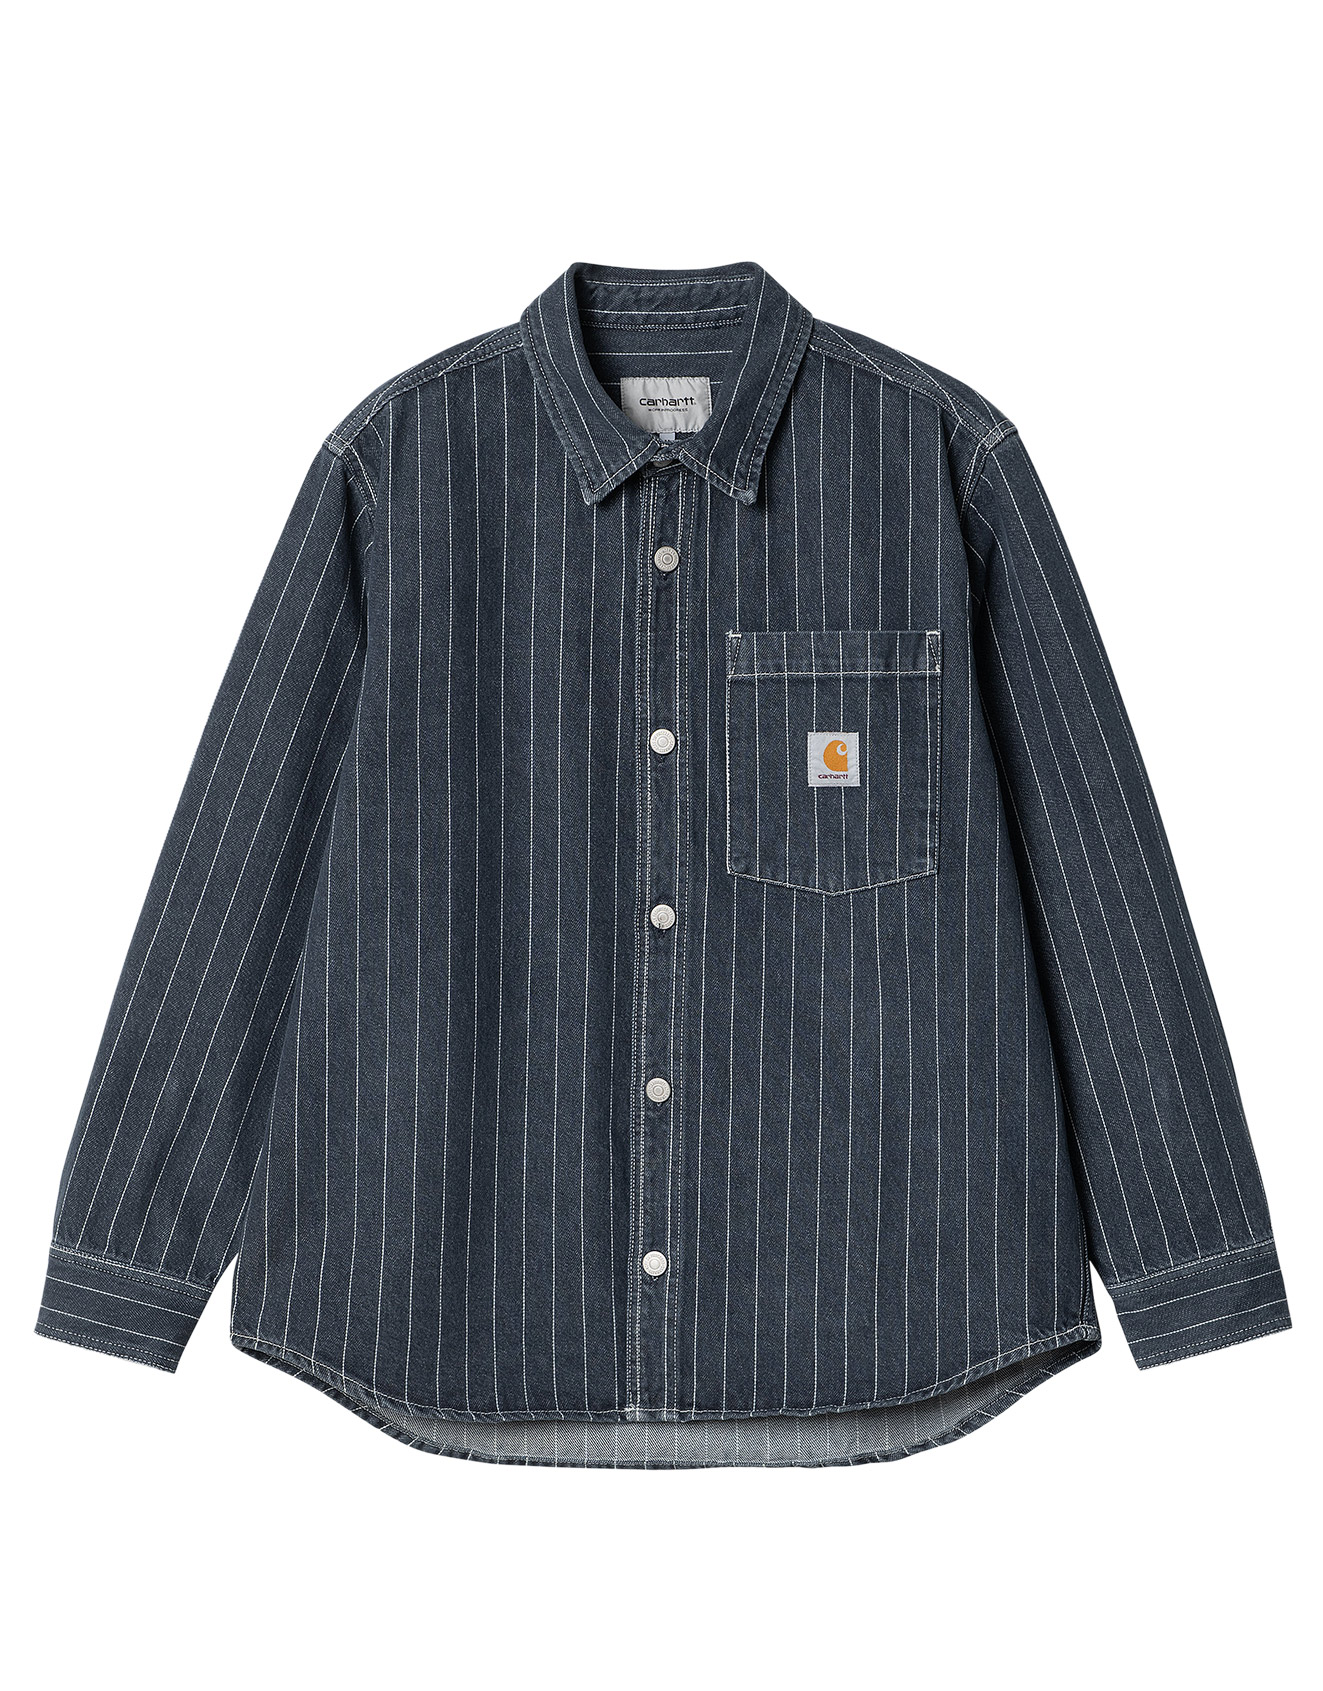 Carhartt WIP – Orlean Shirt Jac